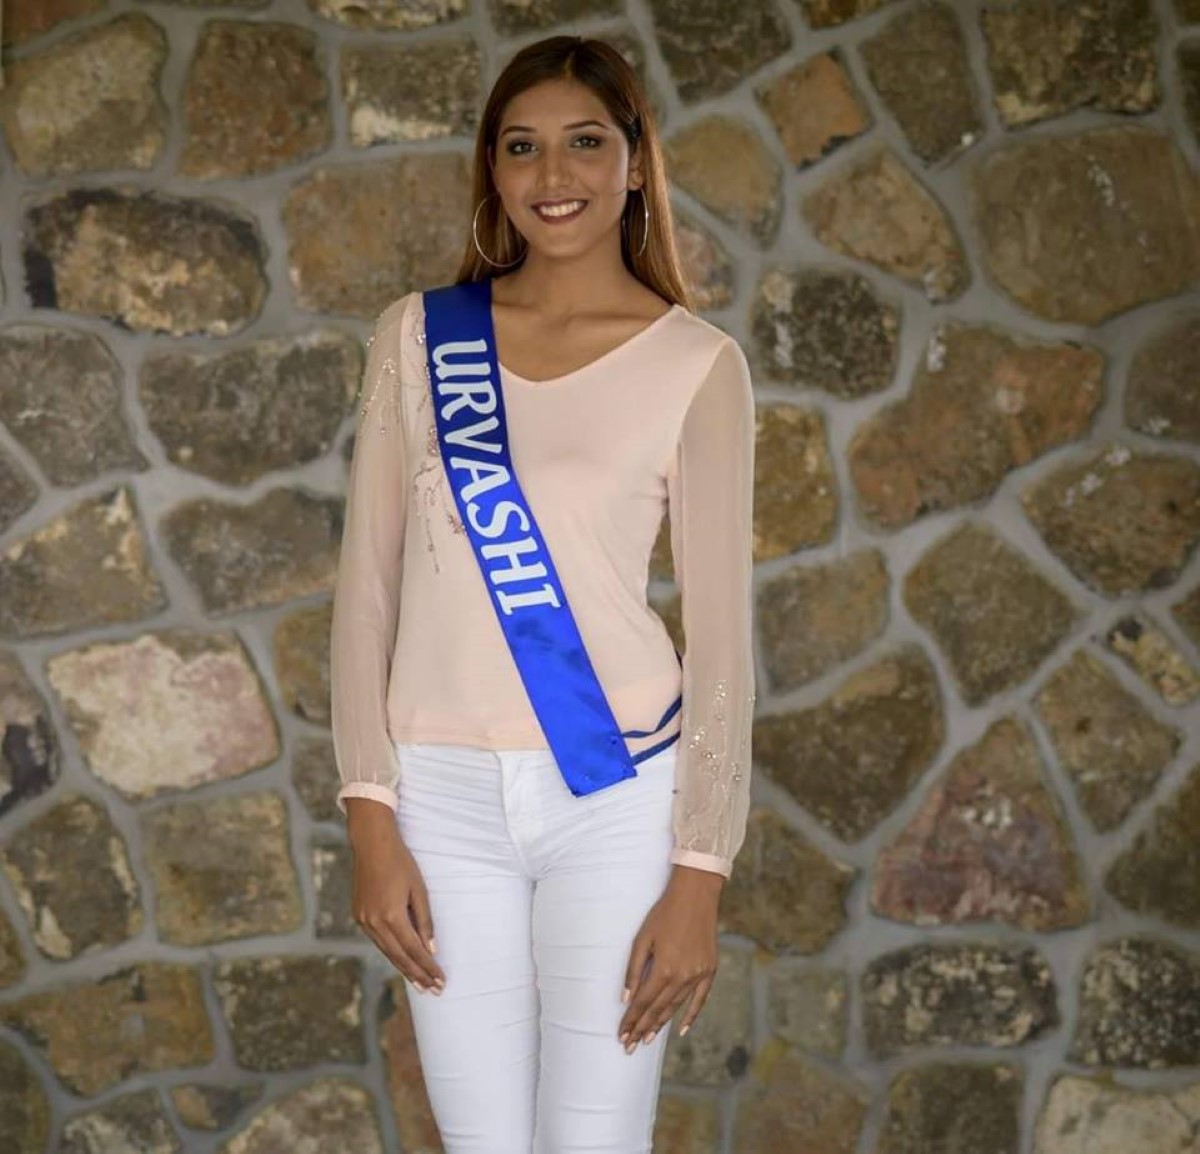 Sale temps pour les Miss Mauritius